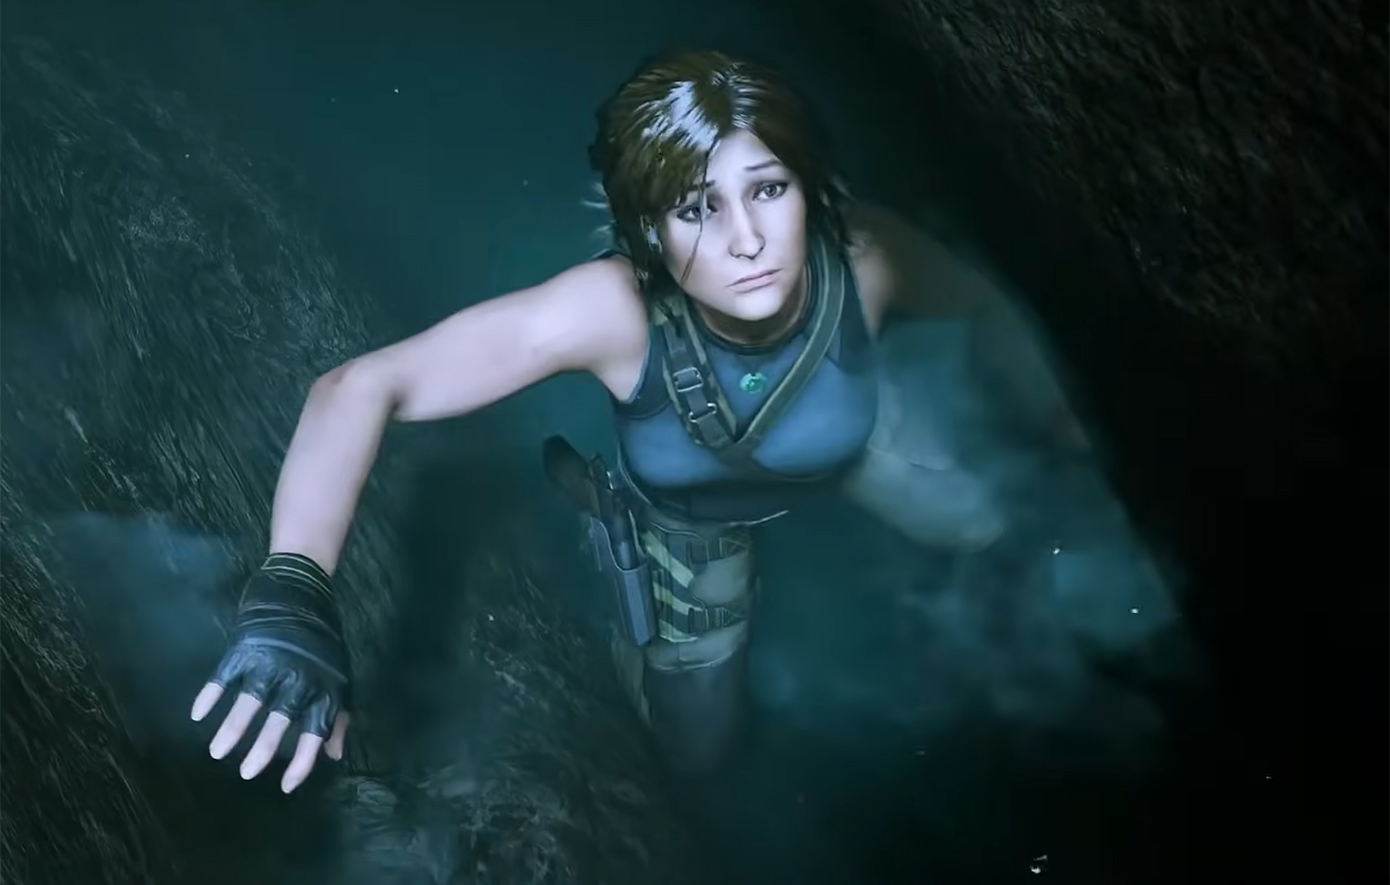 Η Lara Croft αναδείχθηκε ο πιο εμβληματικός χαρακτήρας βιντεοπαιχνιδιών